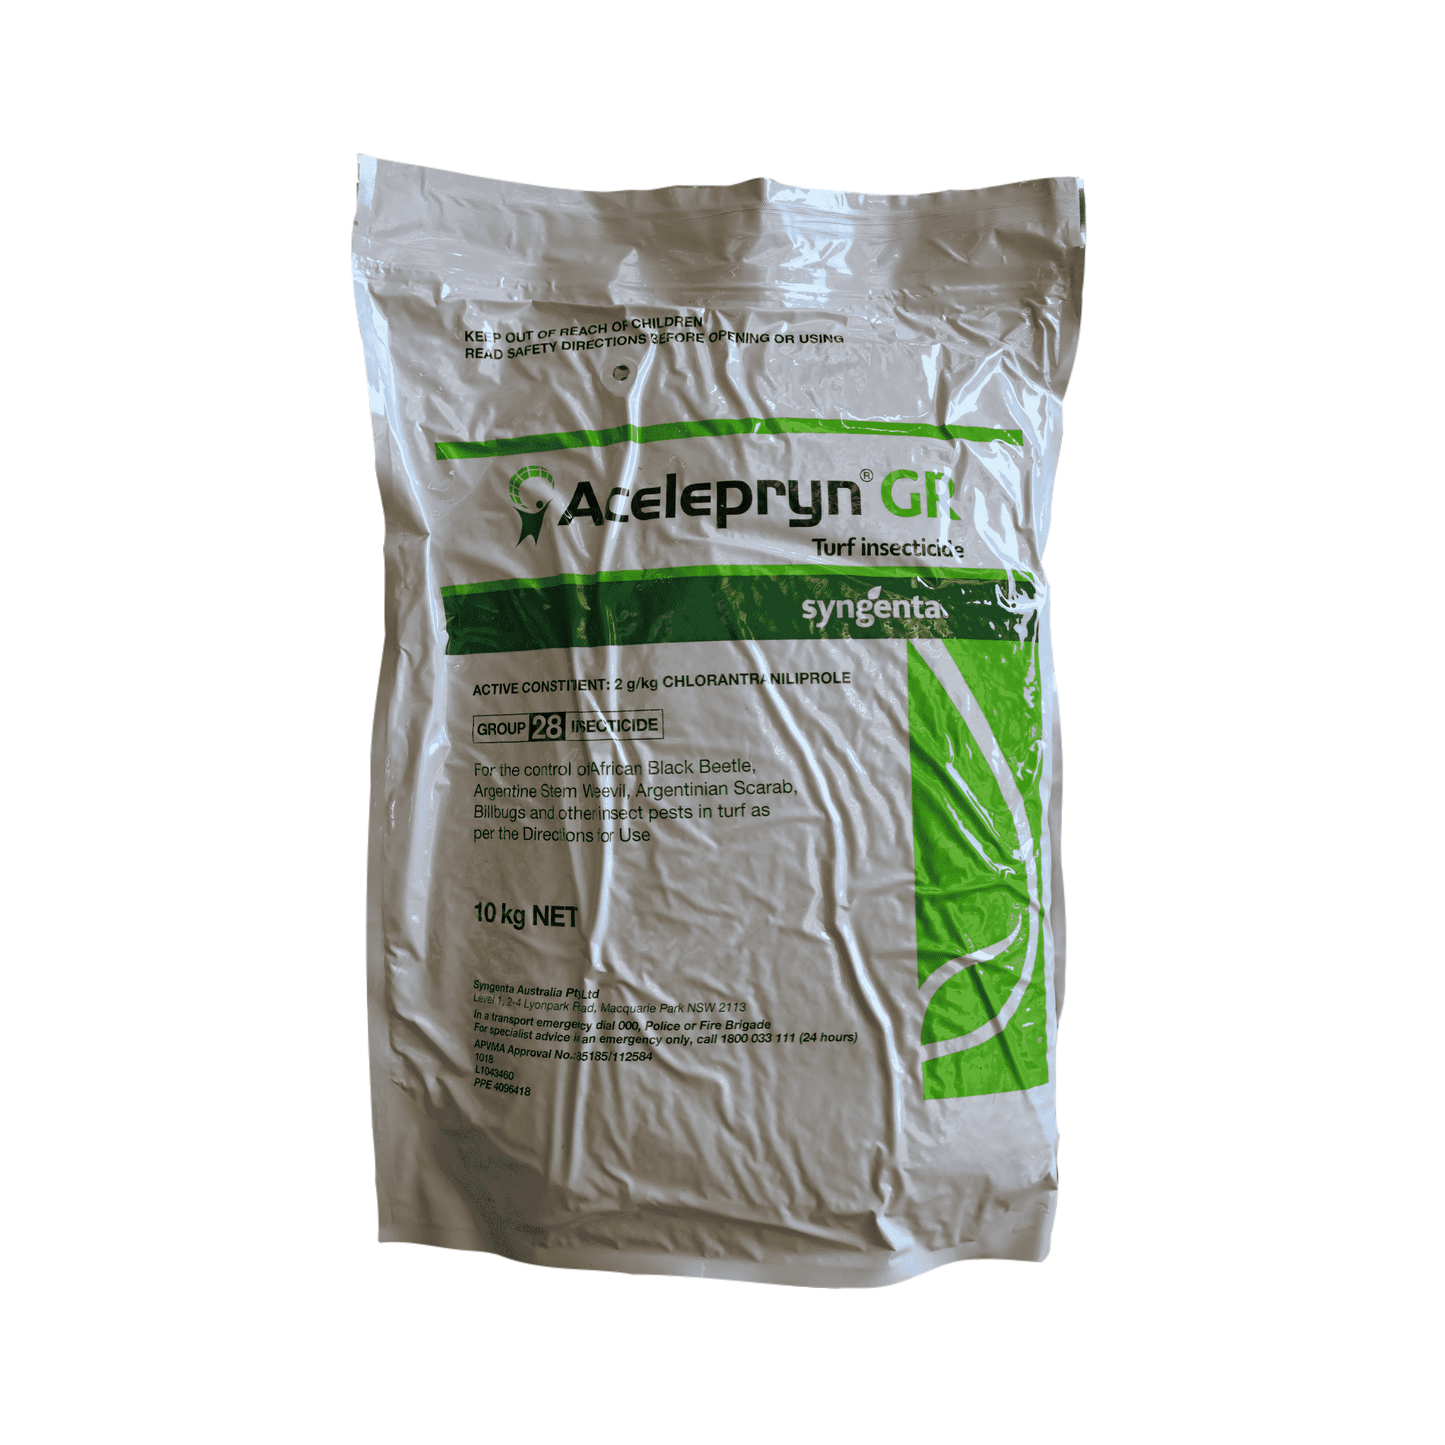 Acelepryn GR Insecticide 10kg